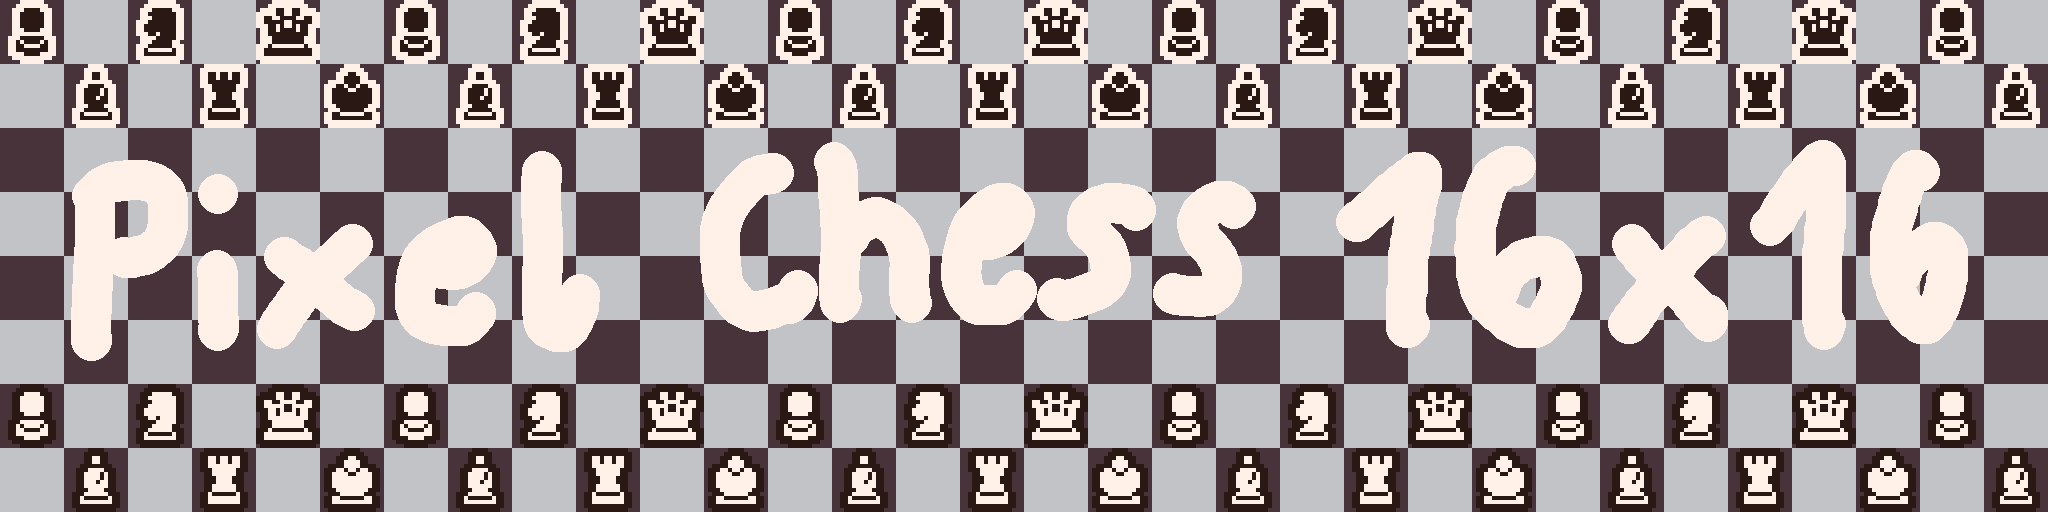 Pixelart Chess